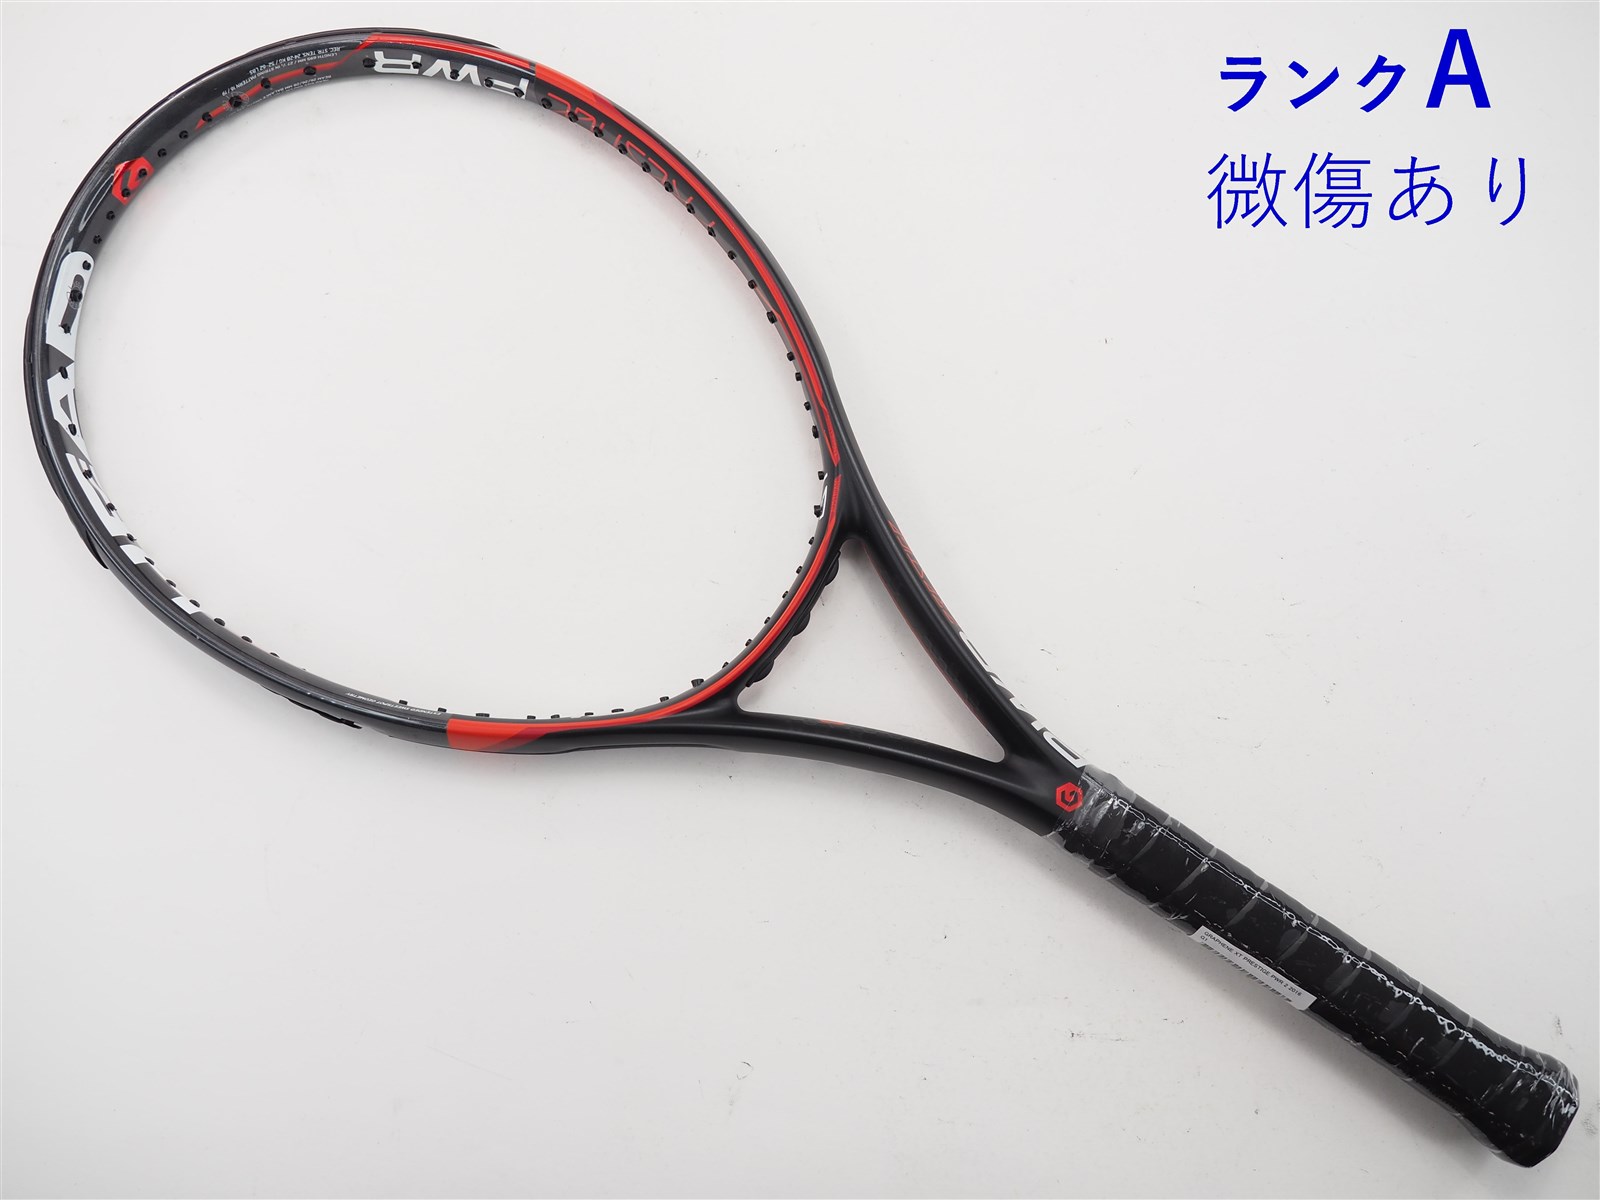 テニスラケット ヘッド グラフィン XT プレステージ パワー 2 2016年モデル (G1)HEAD GRAPHENE XT PRESTIGE PWR 2 2016